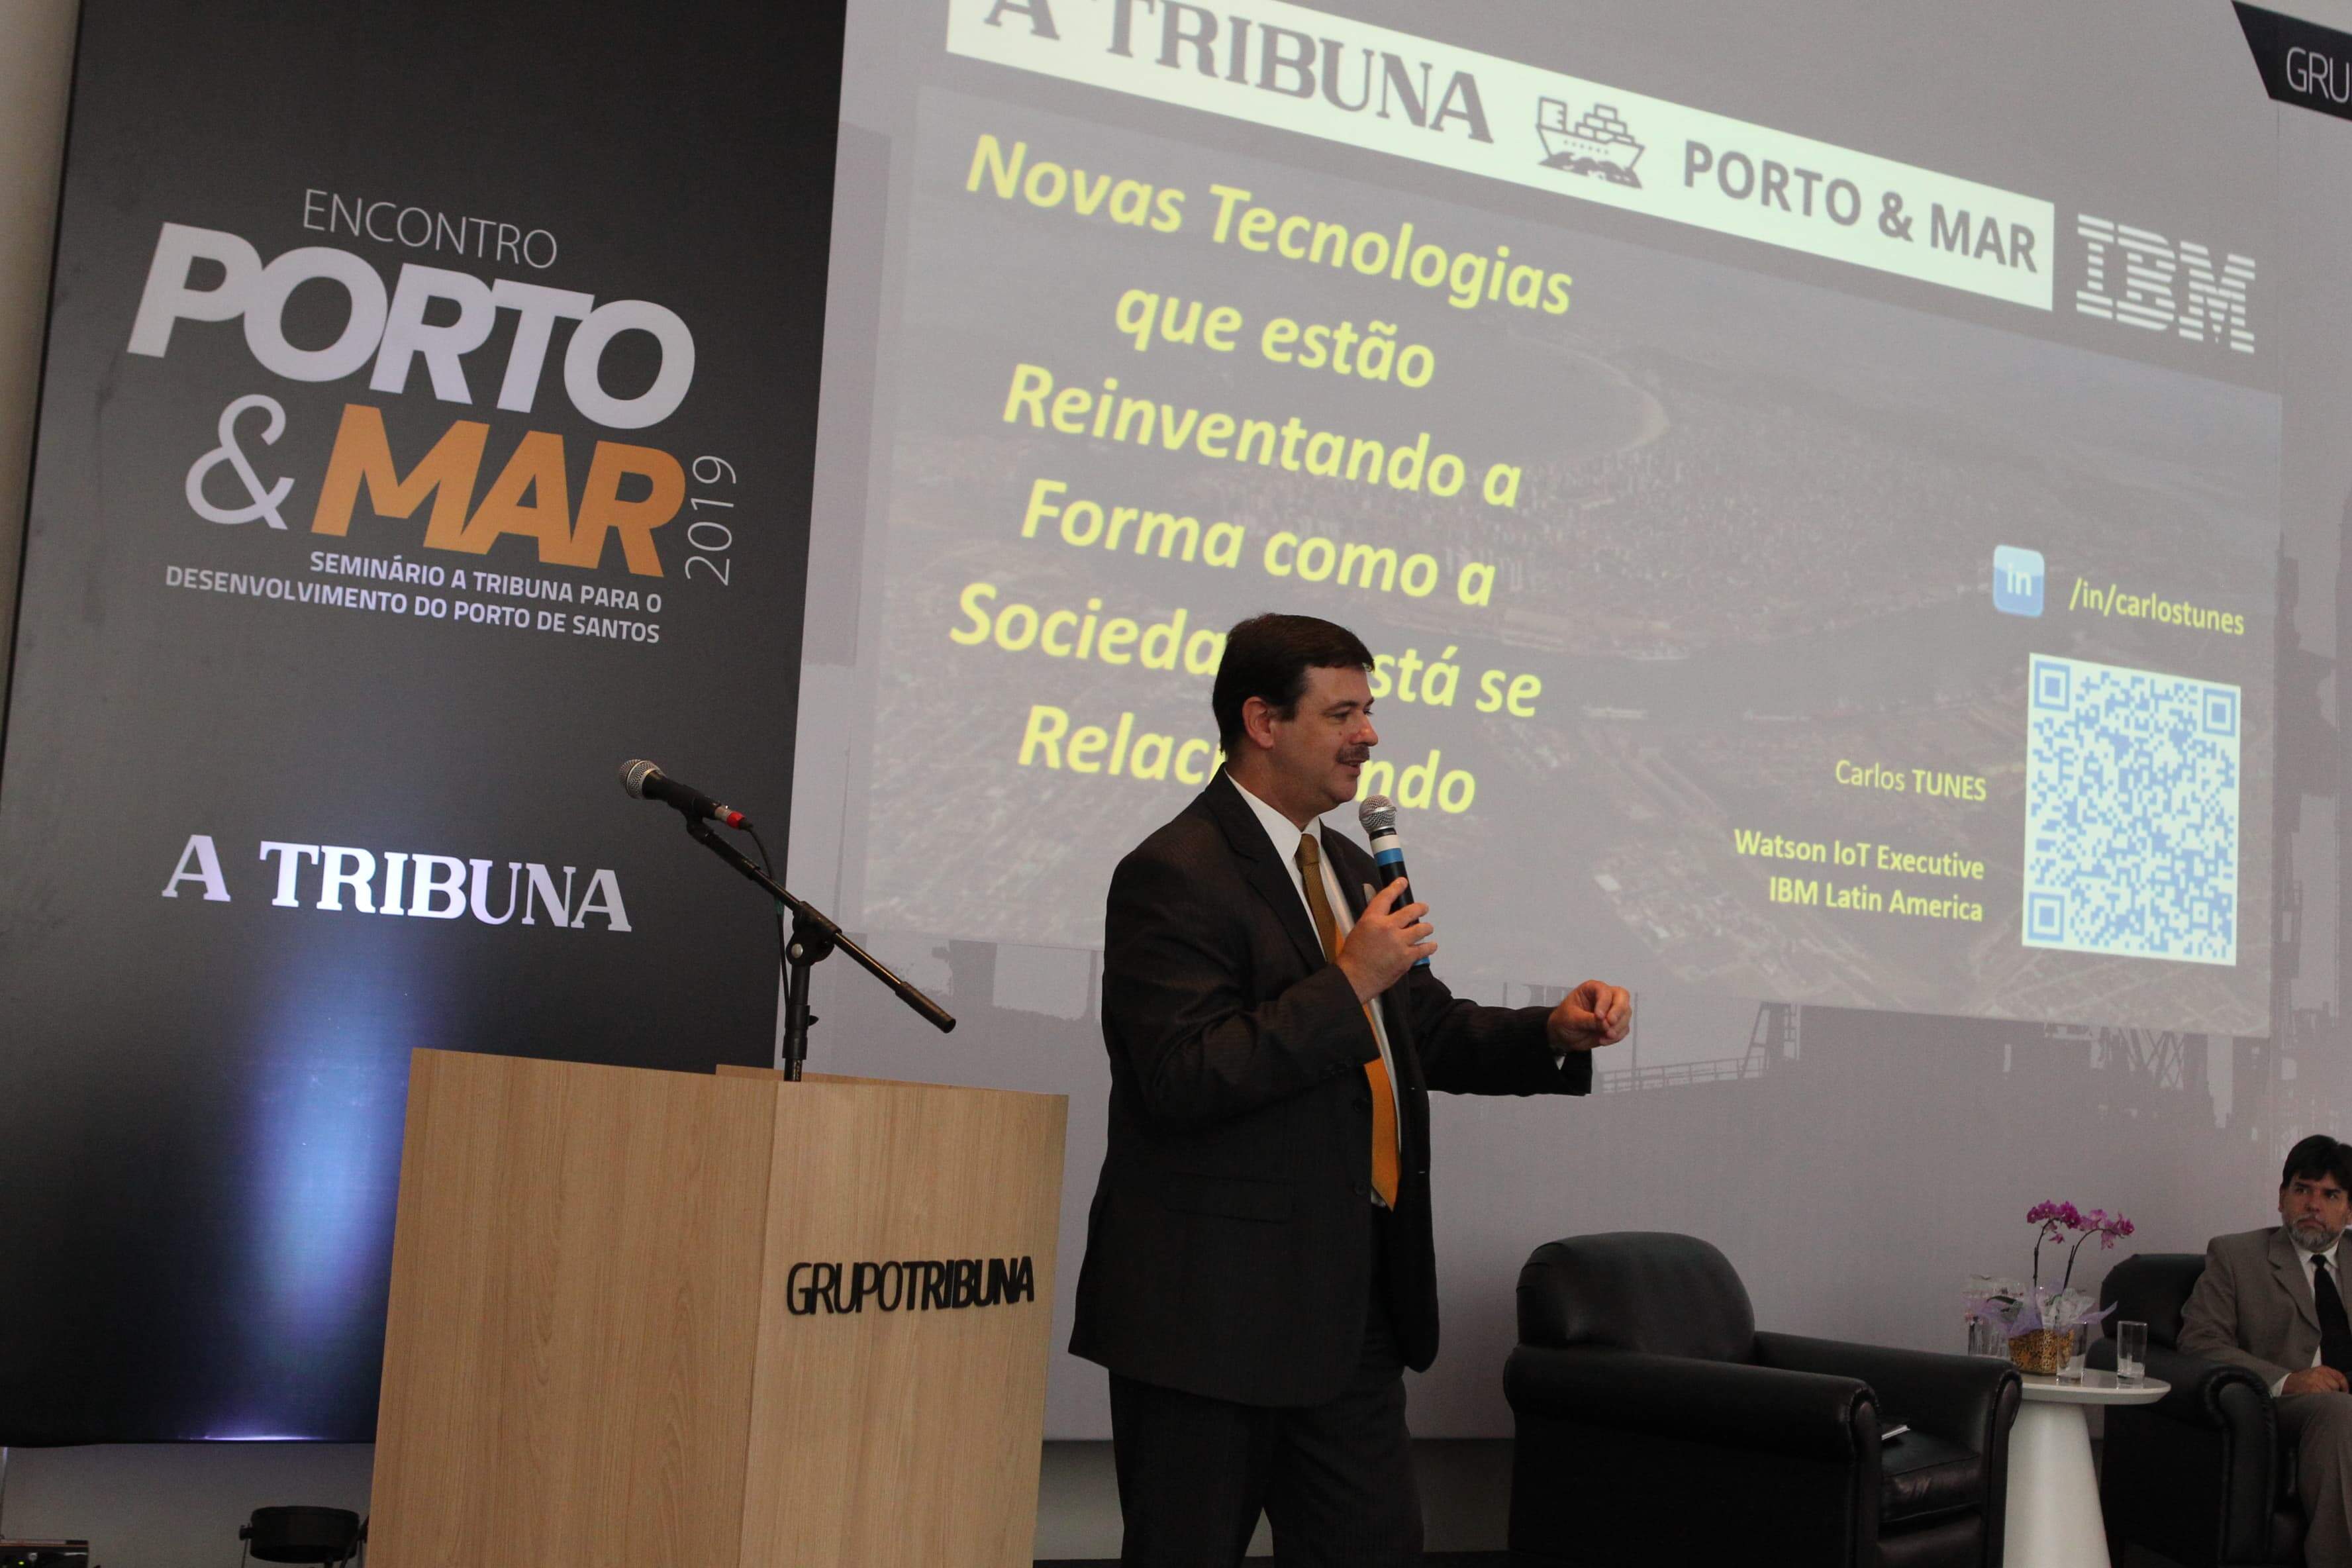 Executivo de tecnologia da IBM na América Latina, Carlos Tunes palestrou no 2º Encontro Porto & Mar